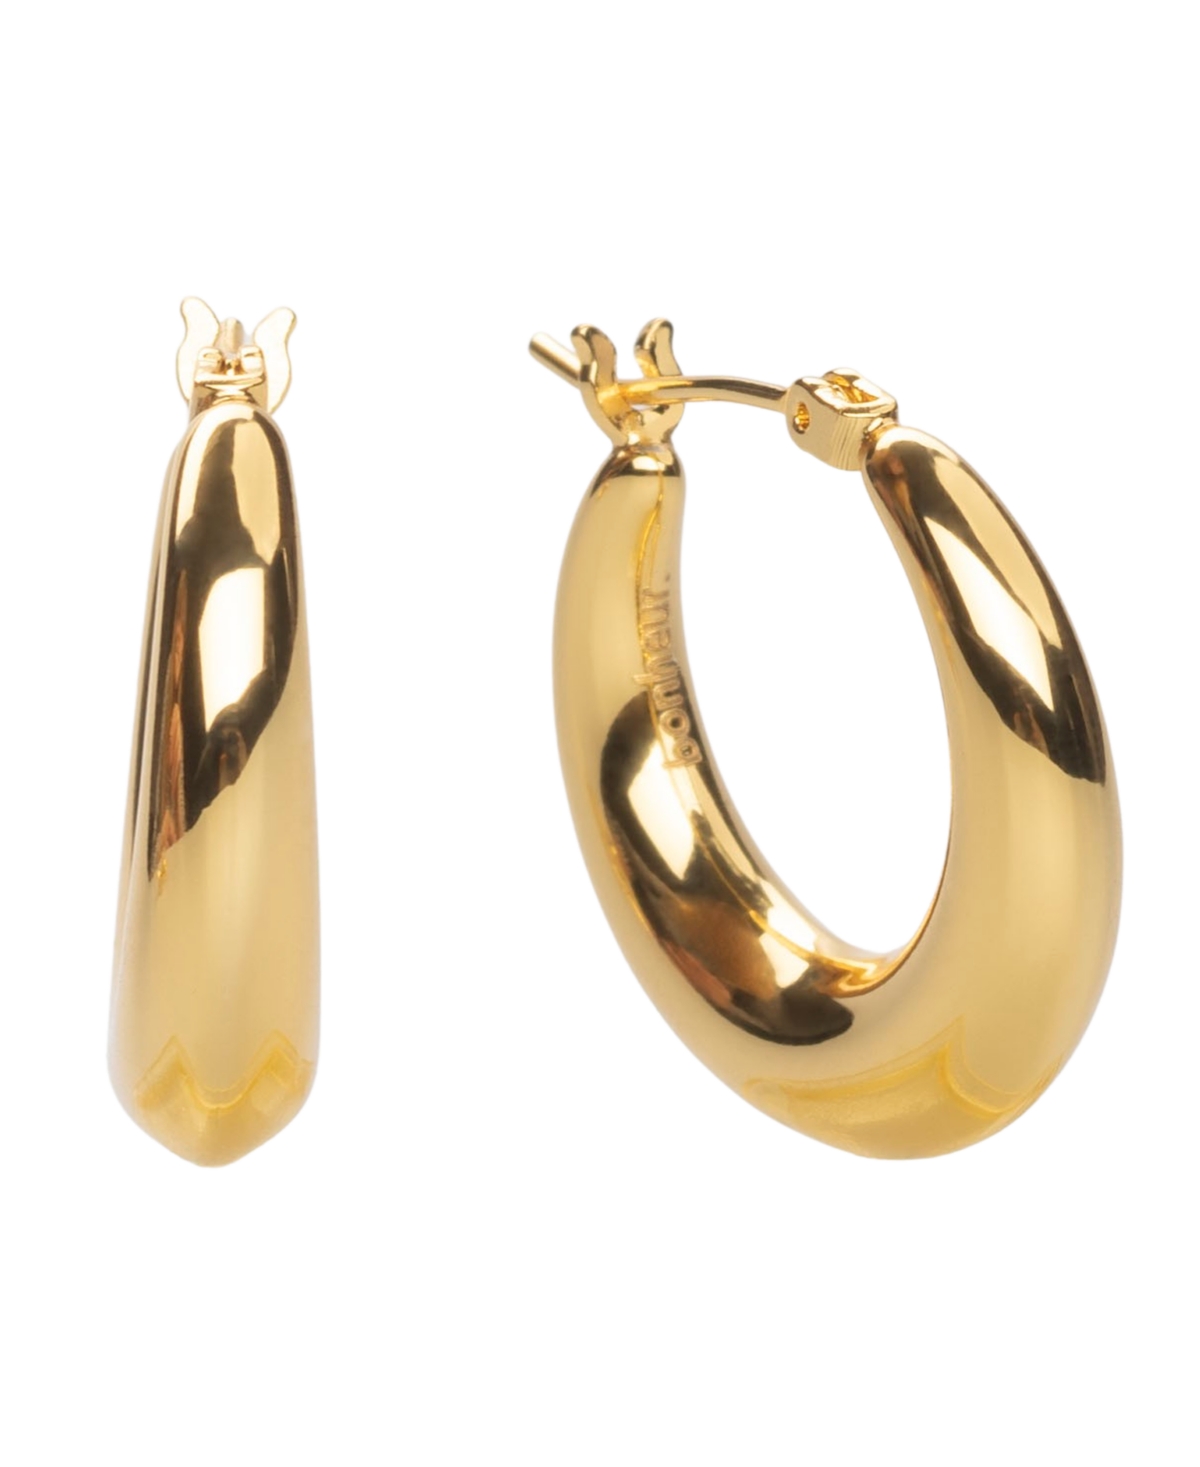 Bonheur Jewelry Puffed Hoop Earrings In Karat Gold Plated Brass